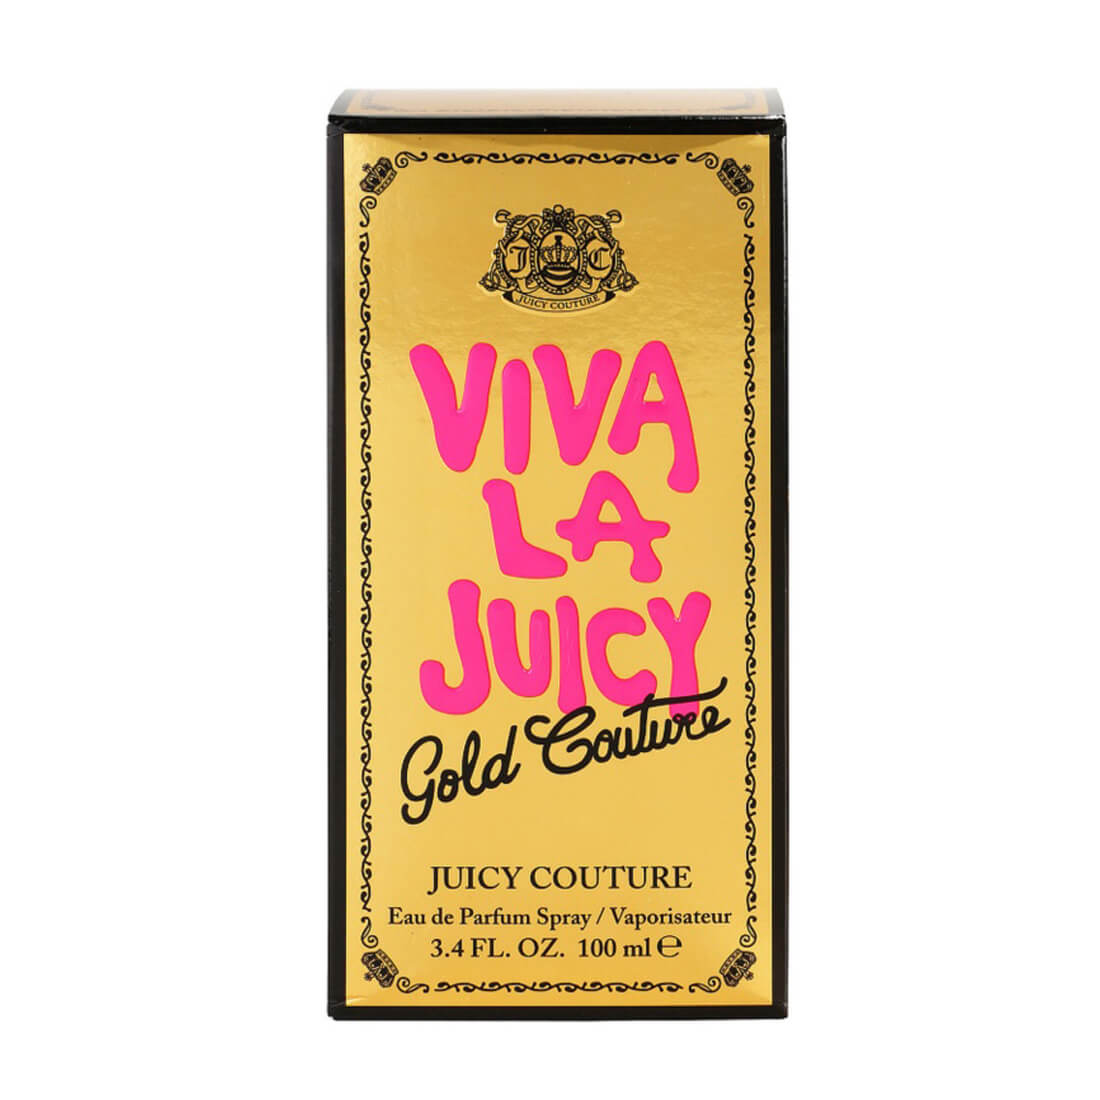 Juicy Couture Viva La Juicy Gold Couture Eau De Parfum For Women